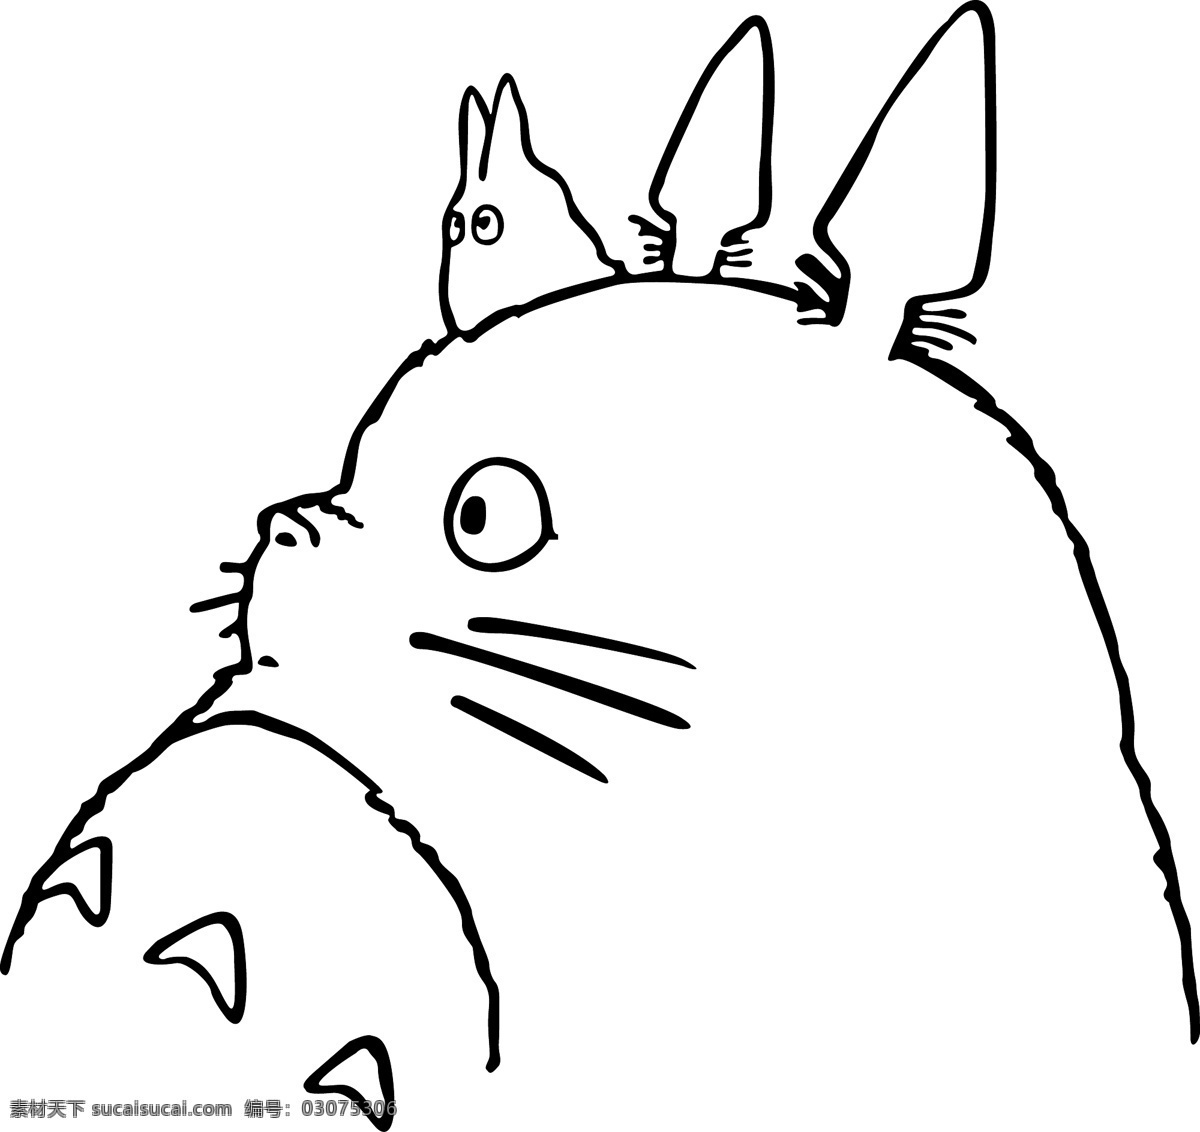 龙猫 标识标志图标 小图标 龙猫矢量素材 龙猫模板下载 宫崎骏 动画作品 矢量 psd源文件